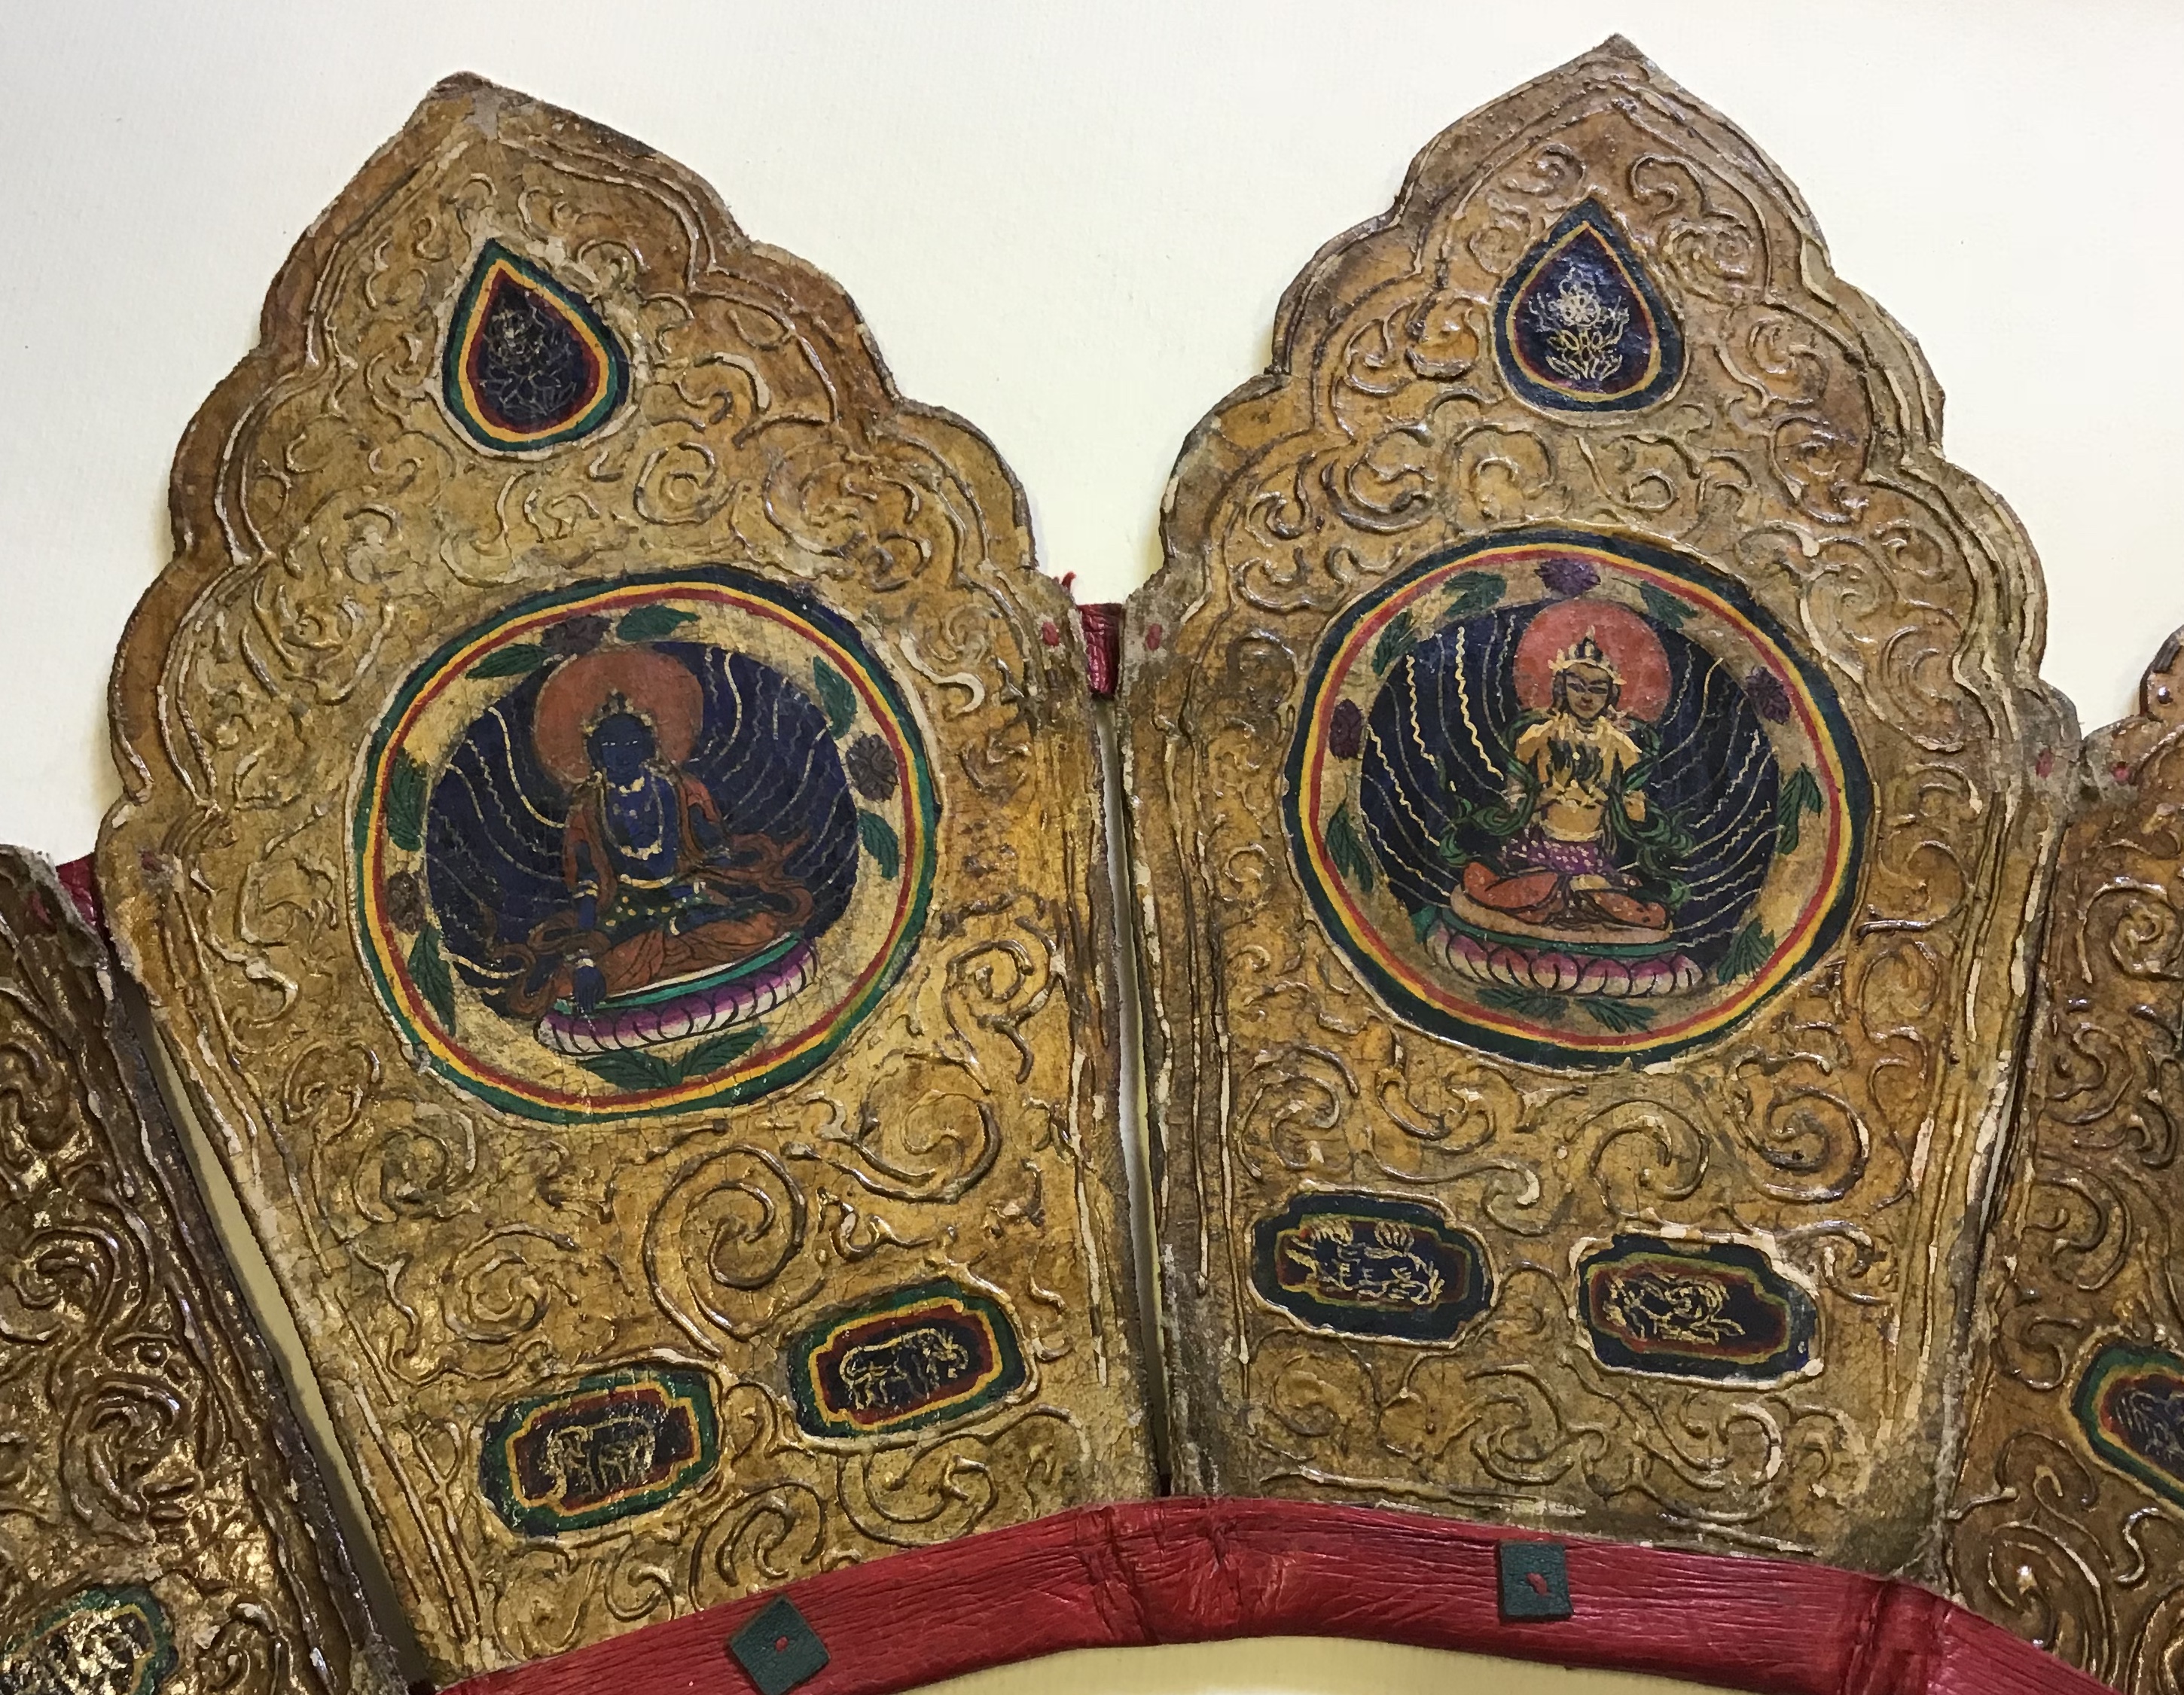 Bamyan Mobili e Oggetti d'Arte Orientale - Etnografia - Copricapo - cuoio e stoffa - Tibet - dimensioni cm.:56 x 21